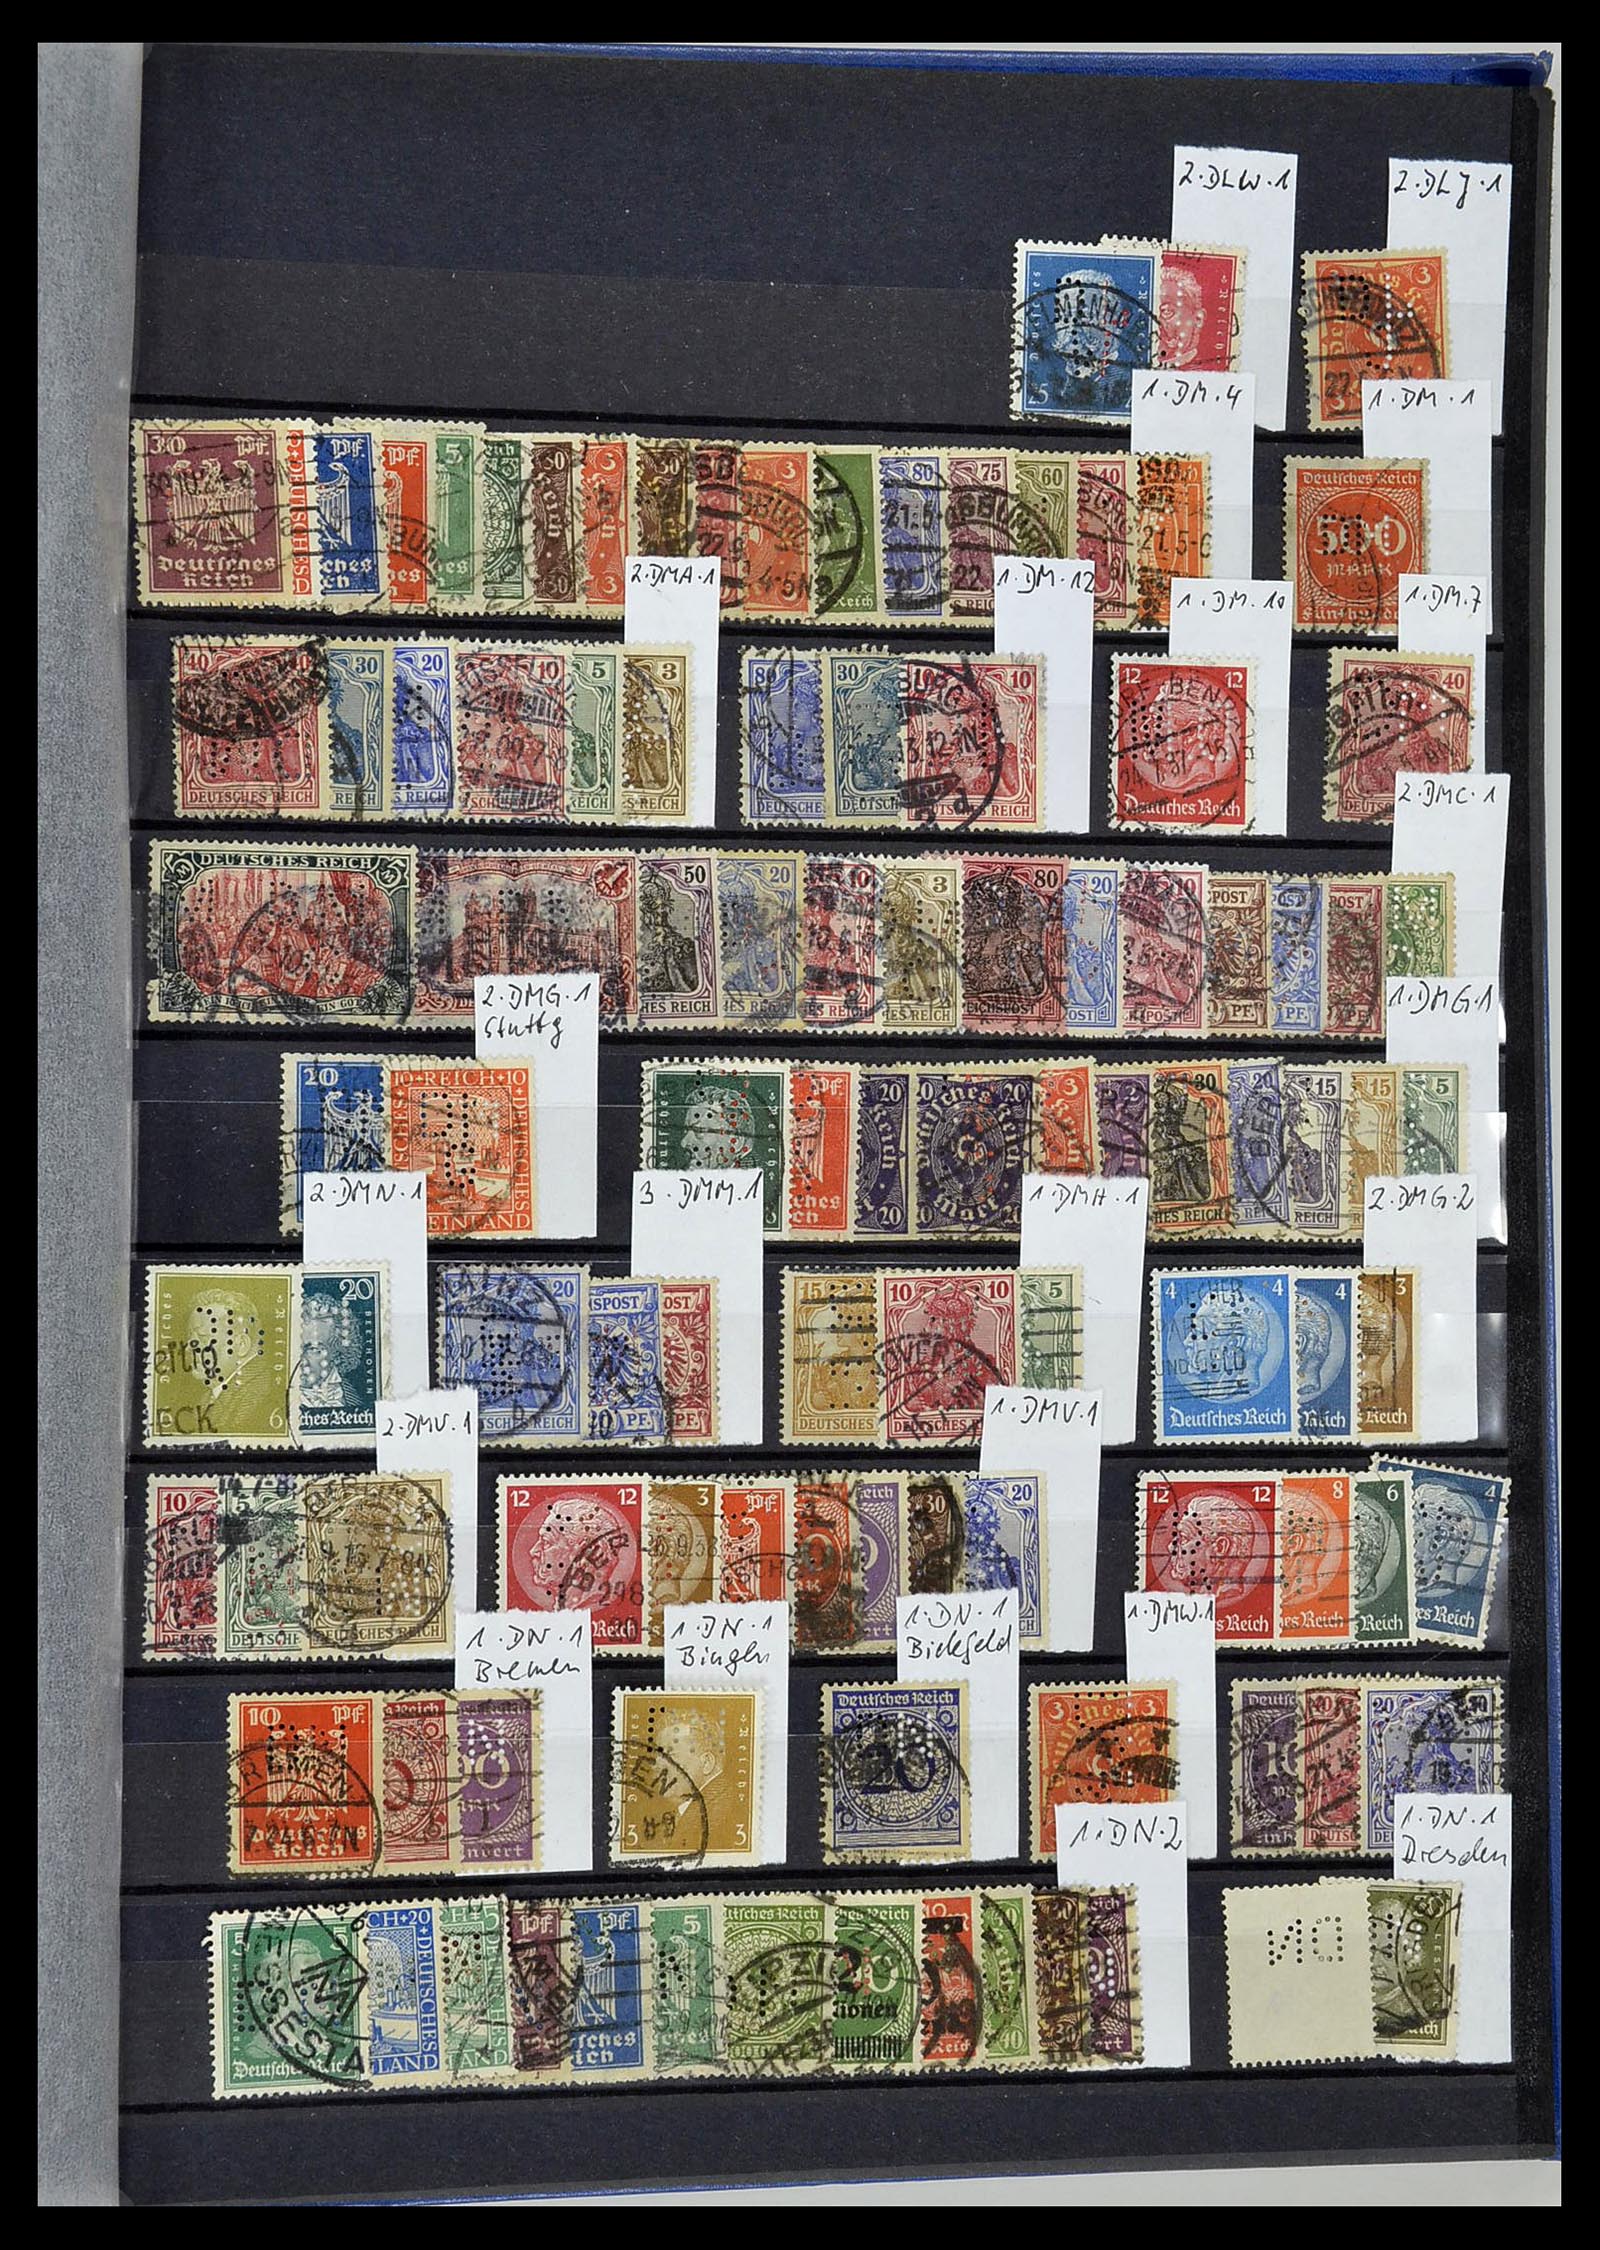 34432 100 - Stamp Collection 34432 German Reich perfins 1900-1933.